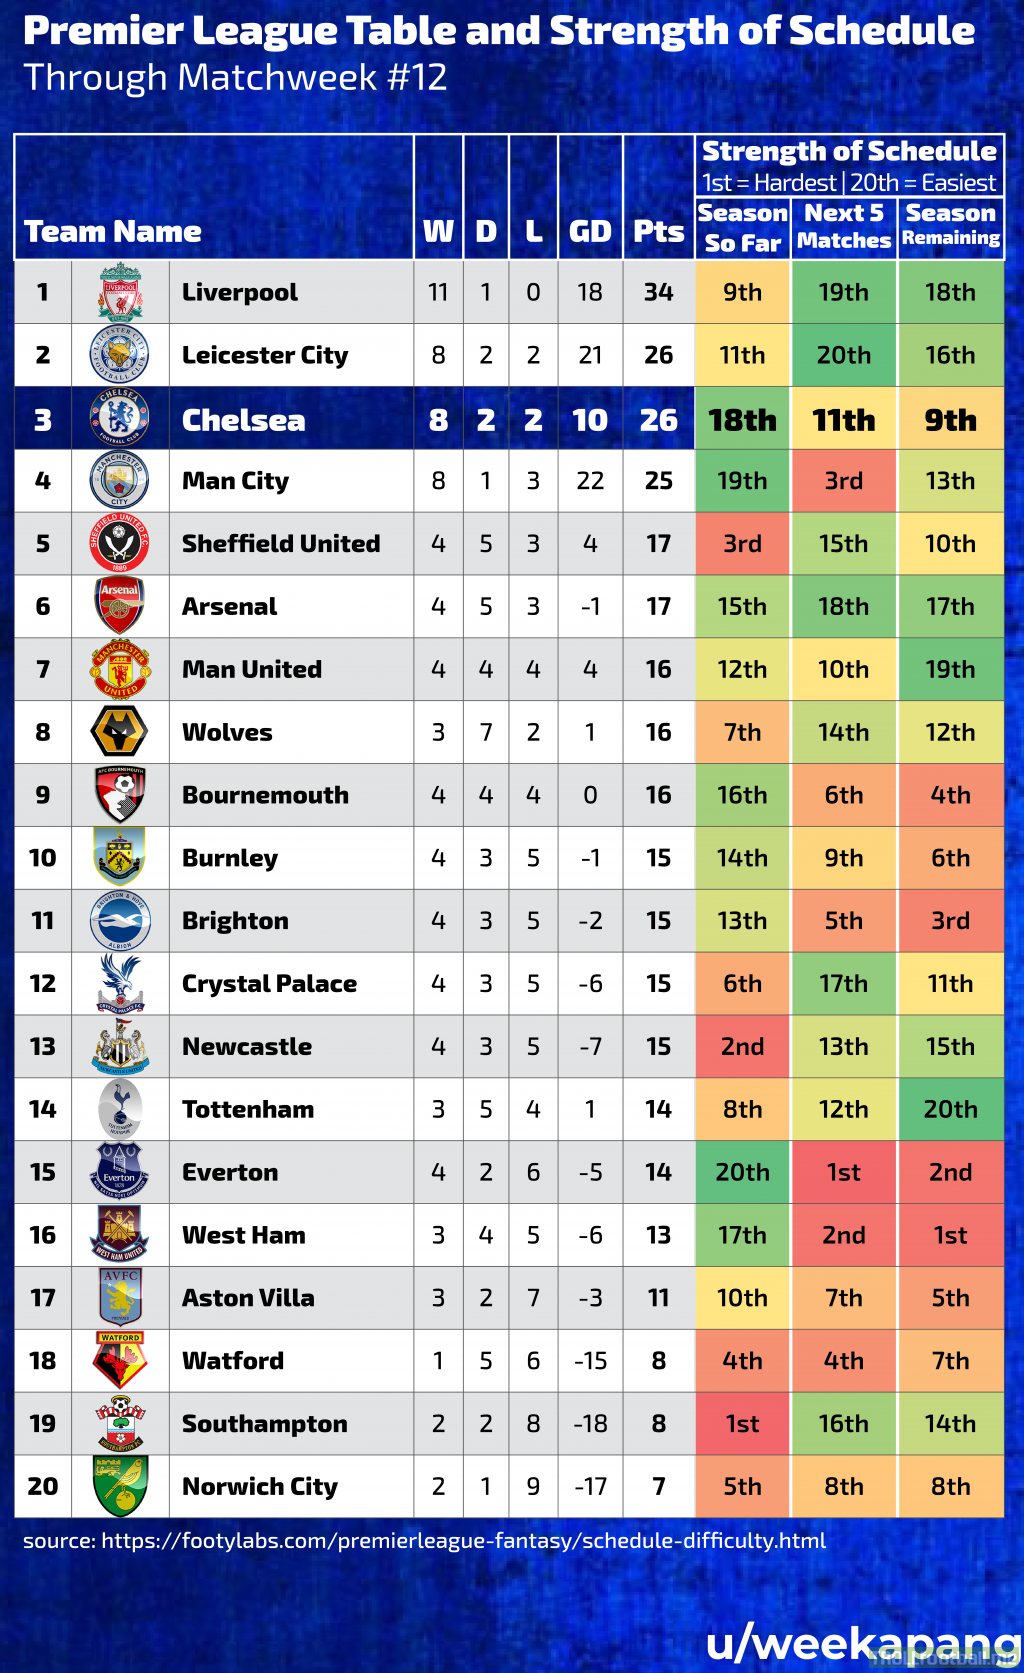 [OC] Premier League Standings / Strength of Schedule through Matchweek 12 | Troll Football